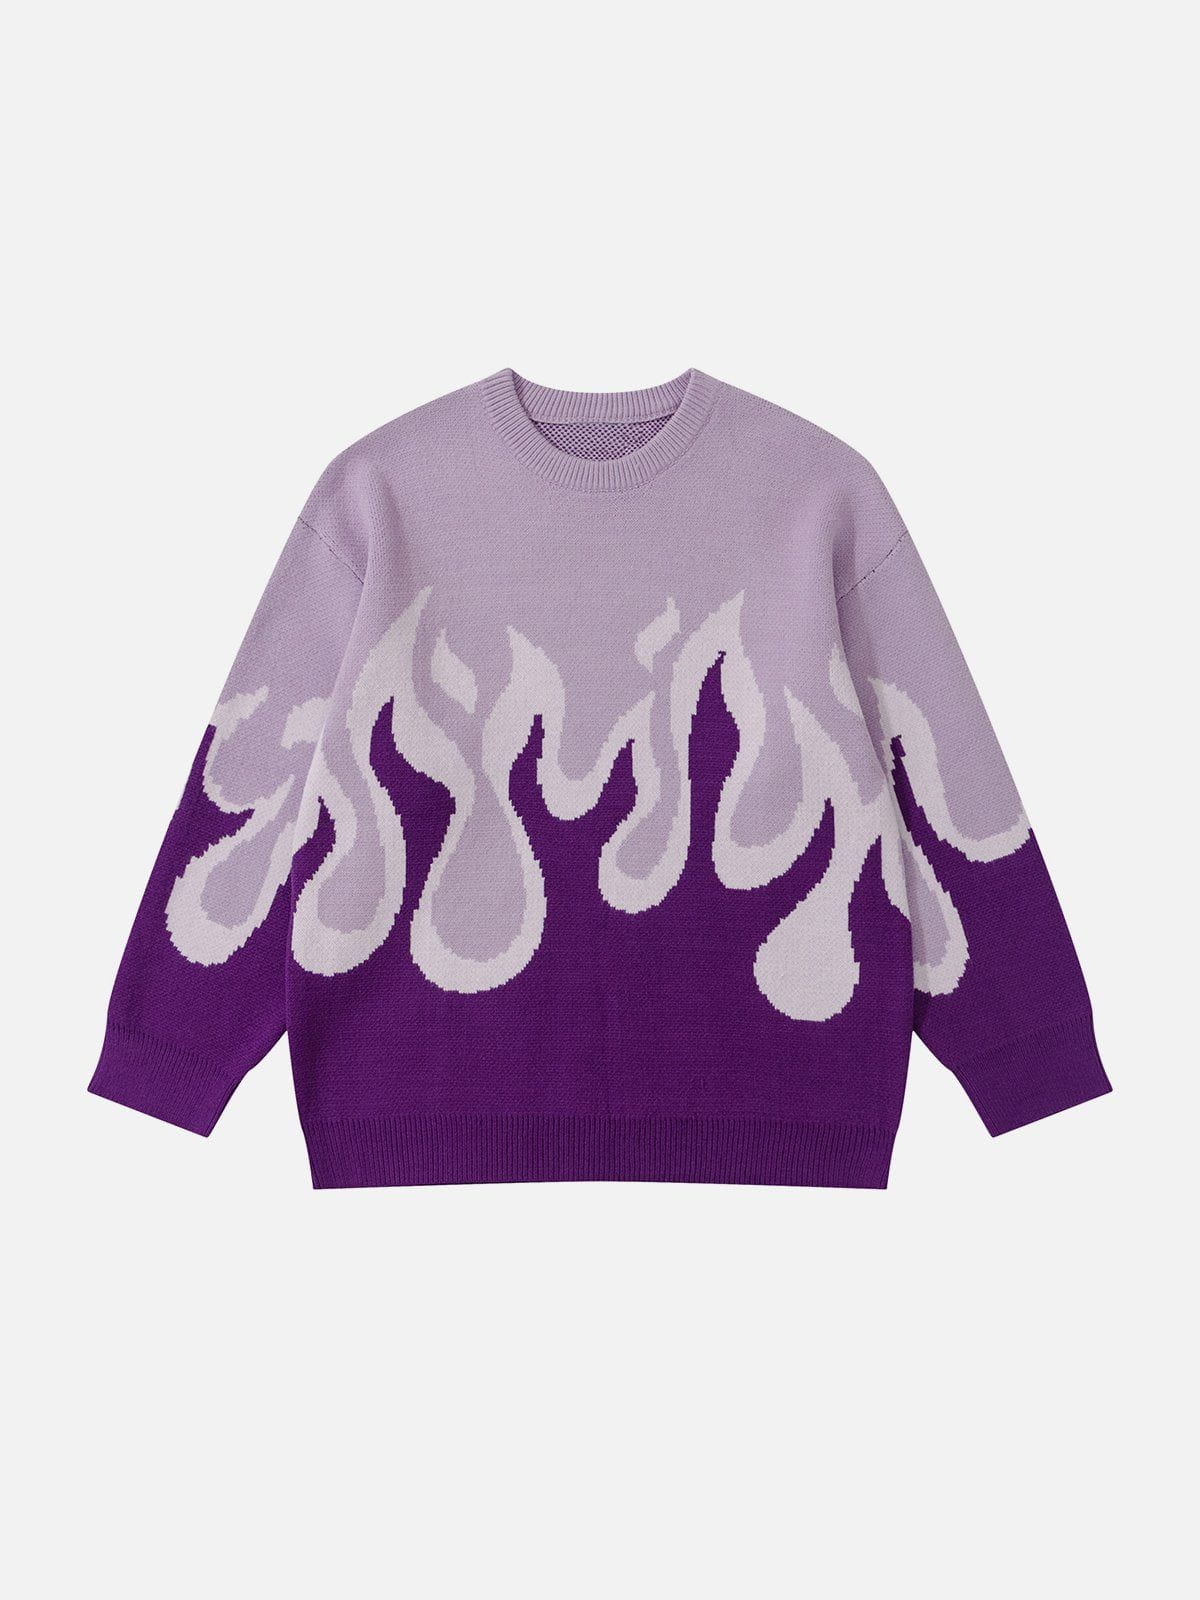 Eprezzy® - Flame Print Sweater Streetwear Fashion - eprezzy.com